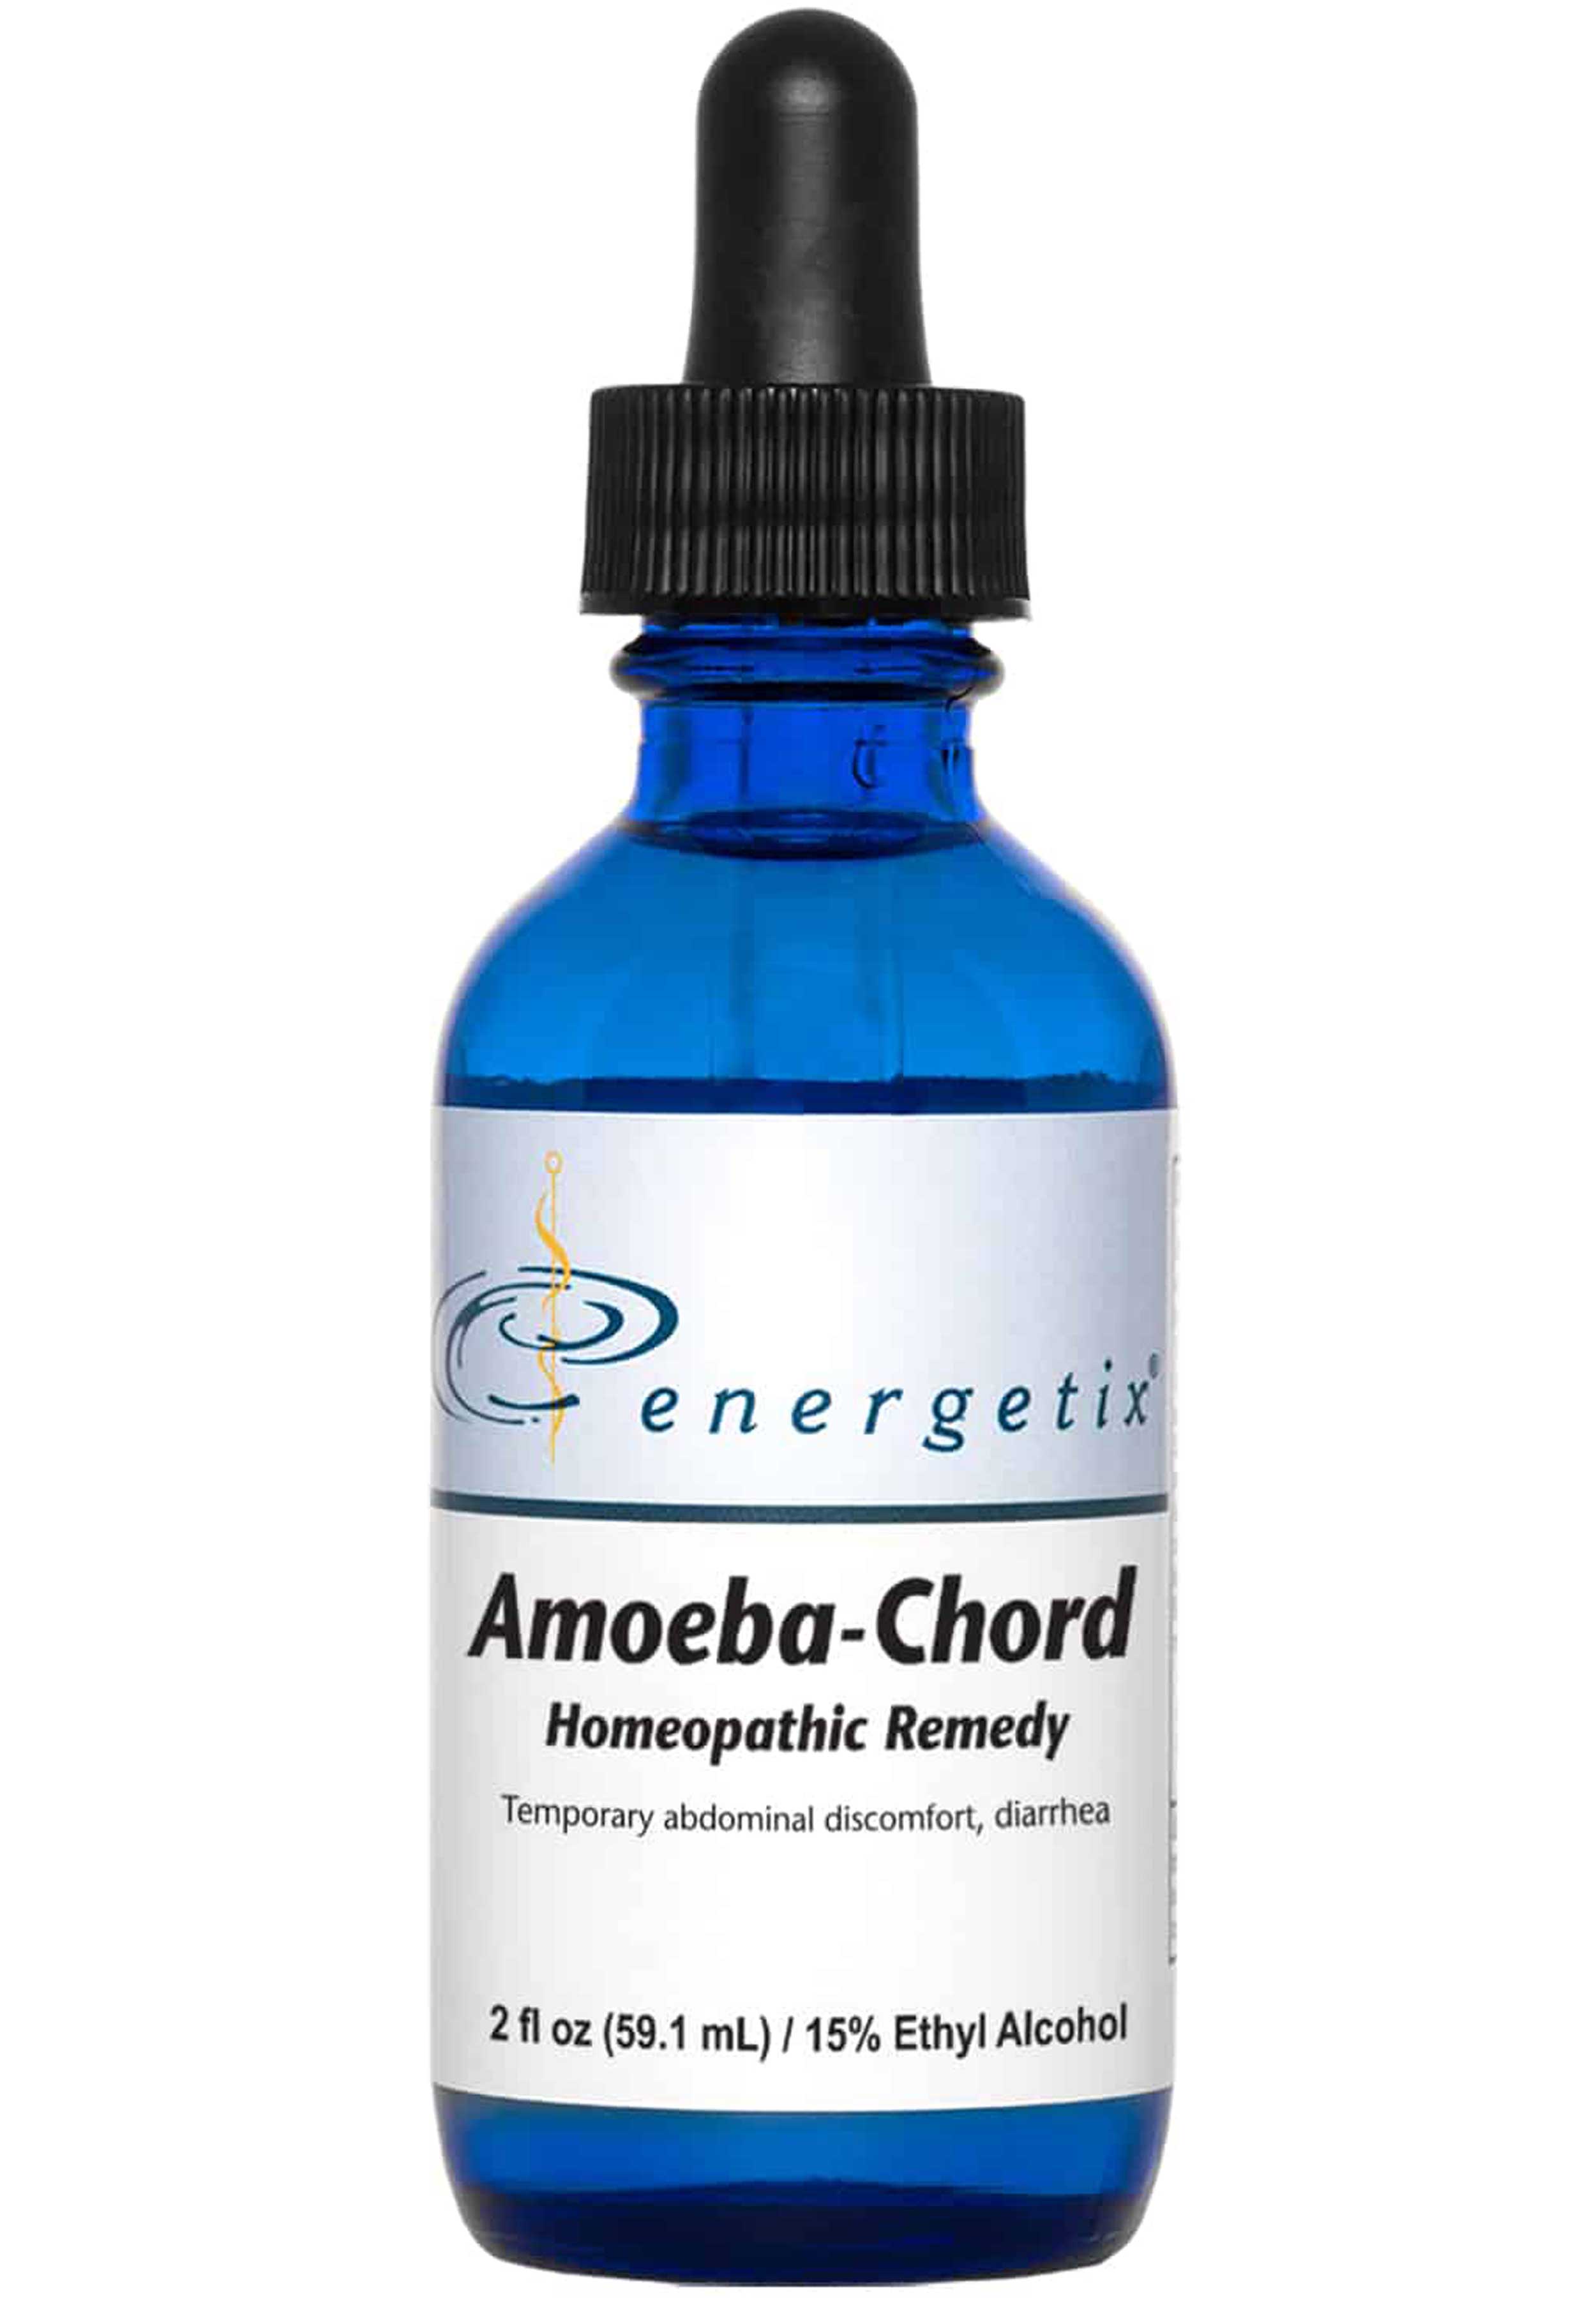 Energetix Amoeba-Chord